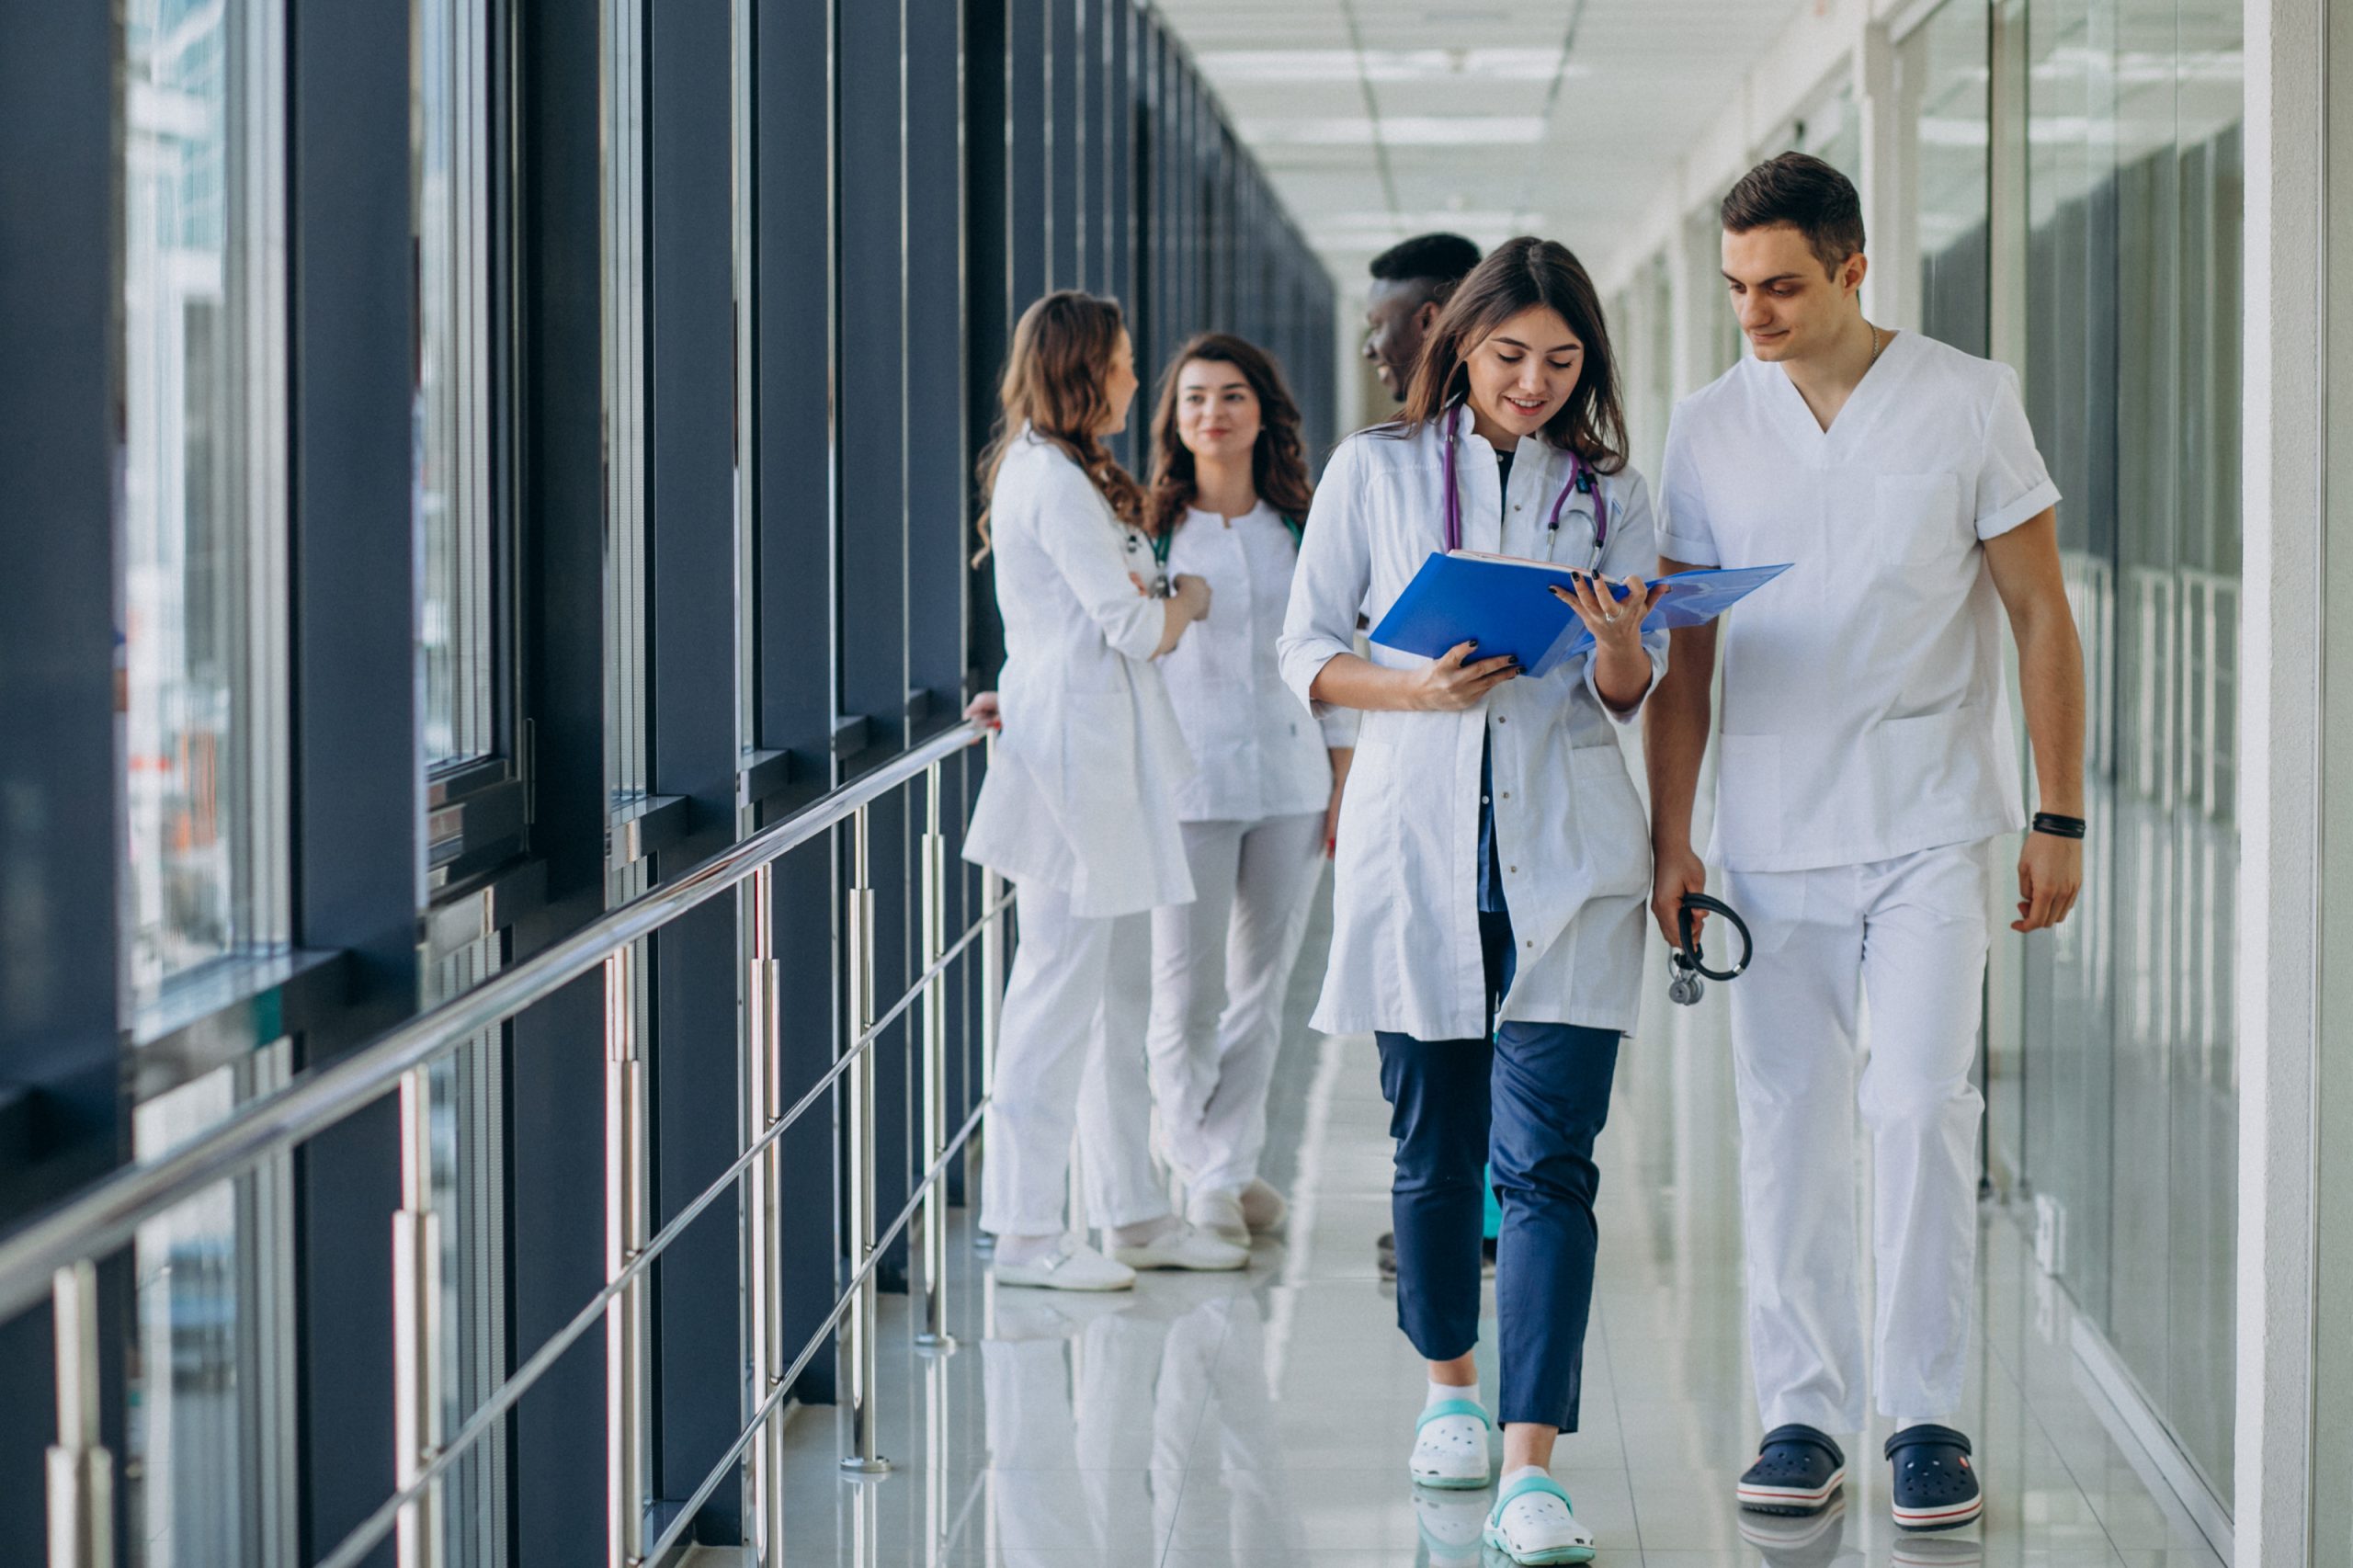 Oferta de Empleo Público en la Sanidad Andaluza: Oportunidades y Desafíos para Profesionales de la Salud